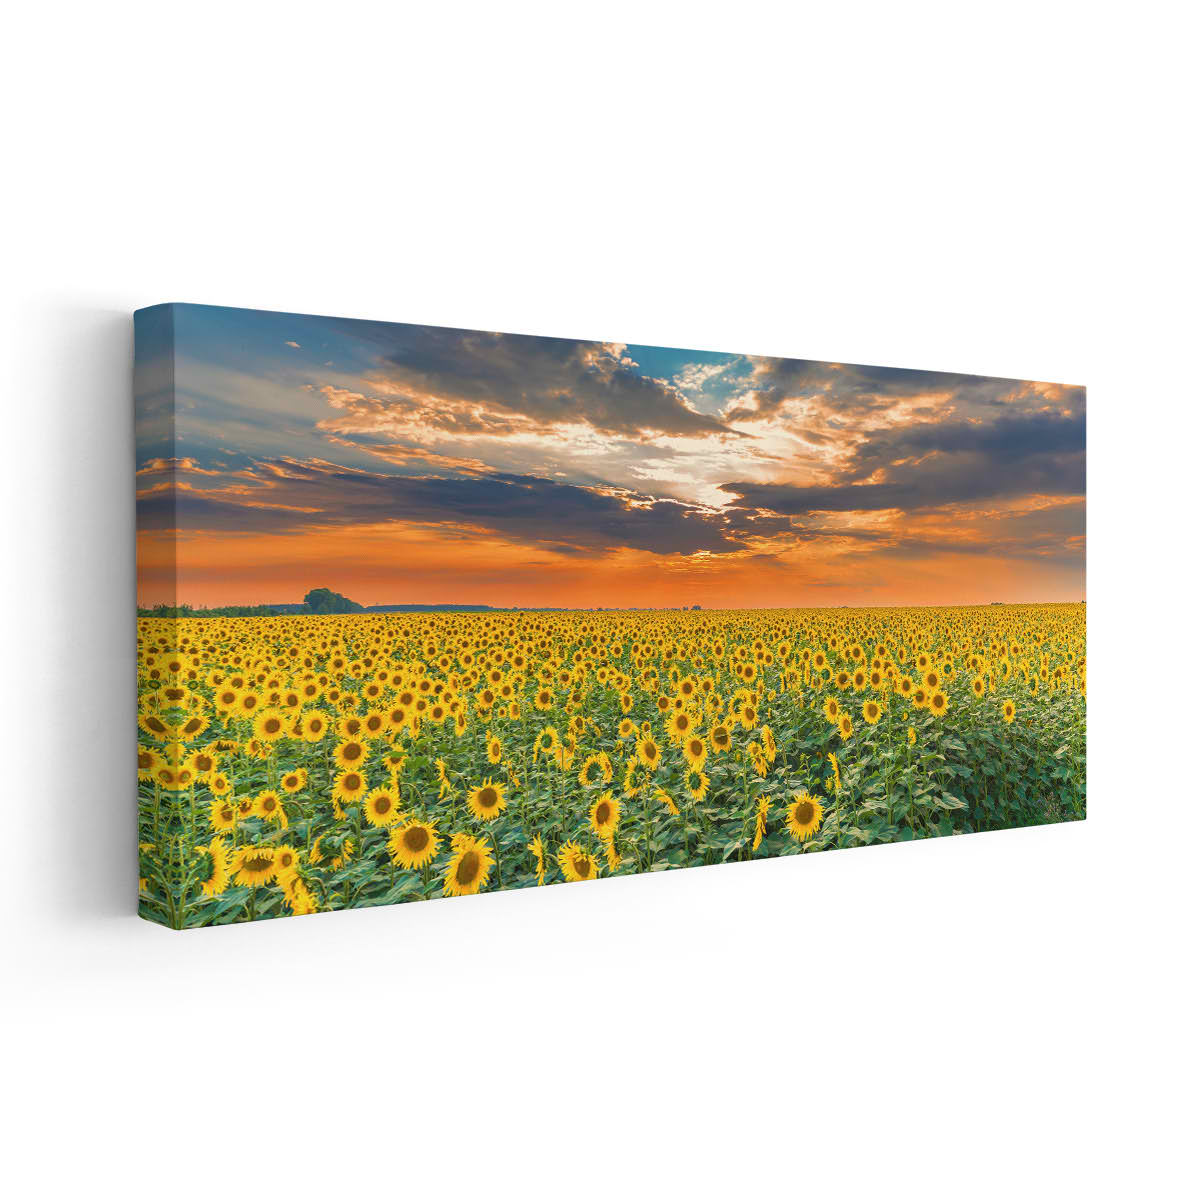 Sunflower Field On Sunset Wall Art